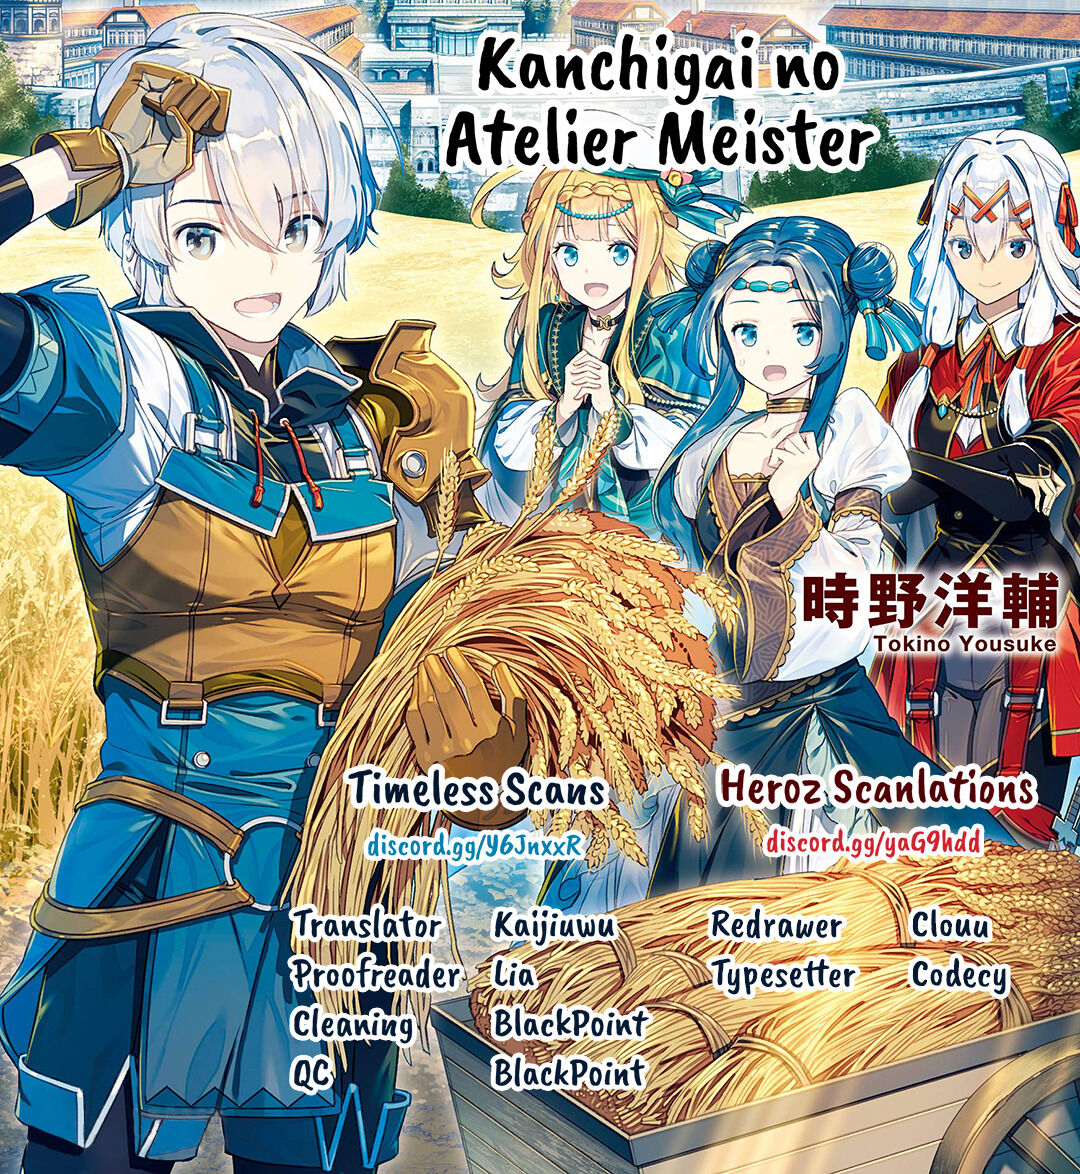 Kanchigai no Atelier Master - Chapter 7519 - Image 1